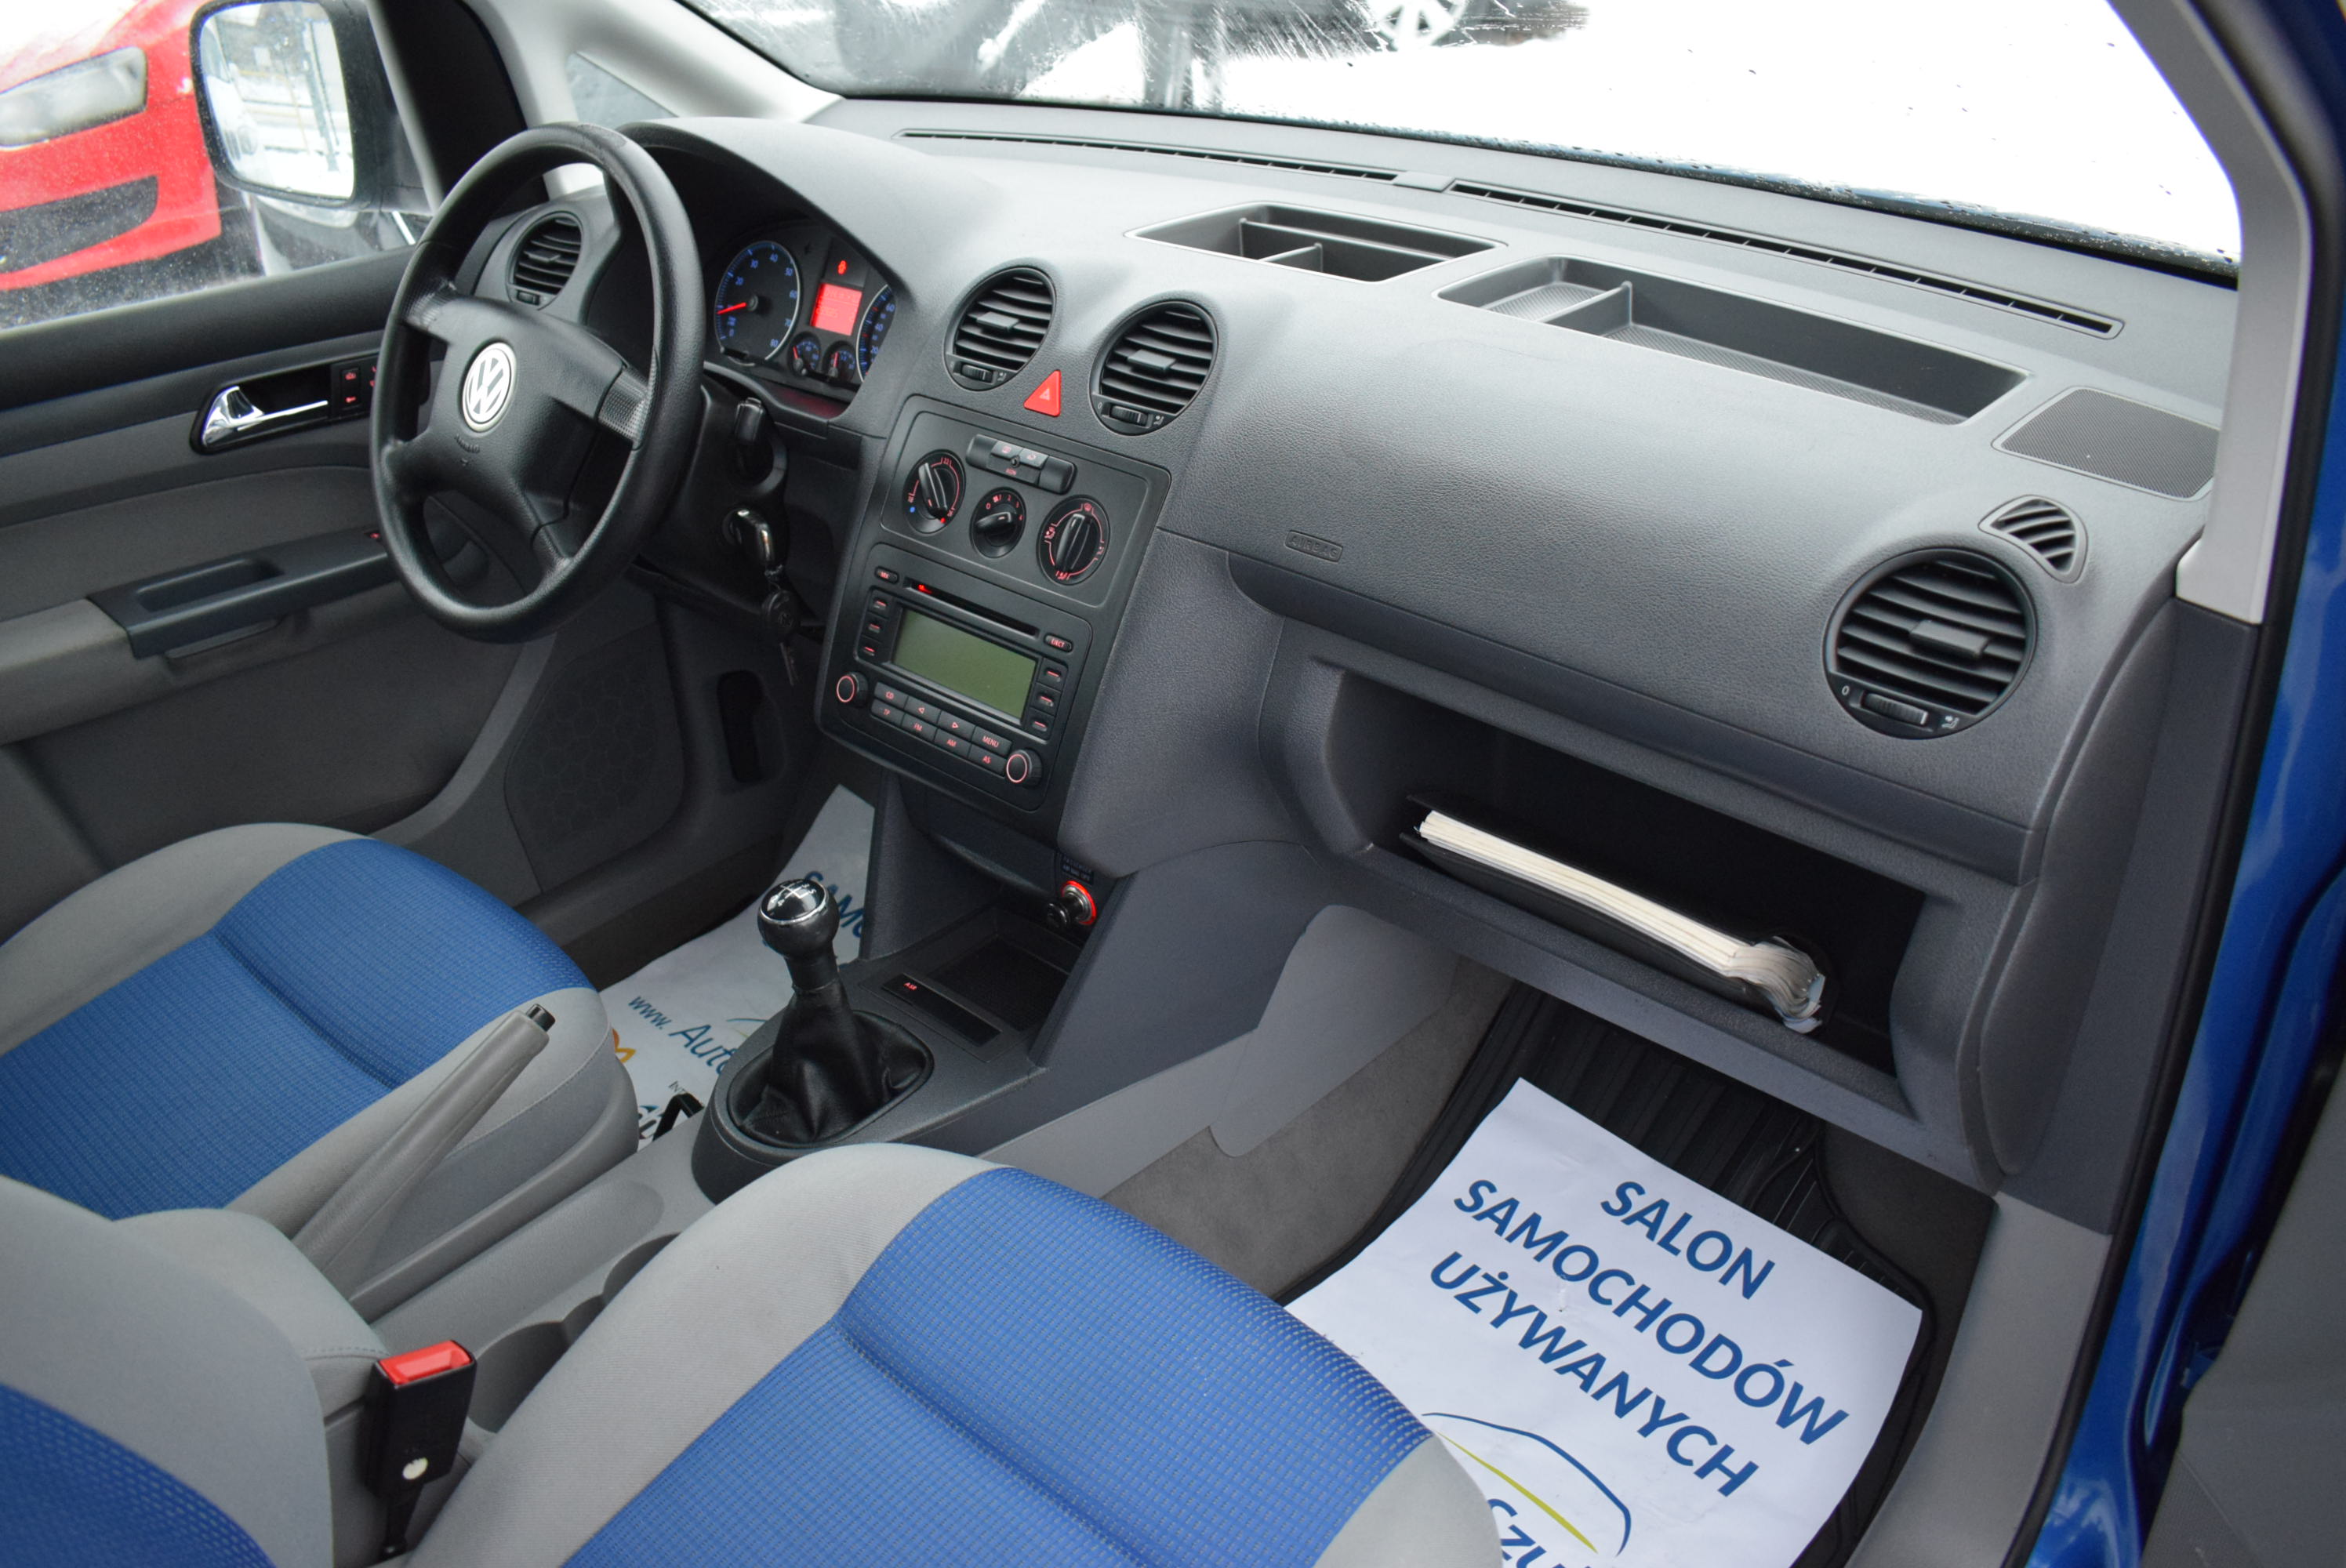 VW Caddy 1.6 Benzyna MPI, 5-Osobowy, 102 PS, Klima, Hak, Najlepsza jednostka silnikowa, Rok Gwarancji full